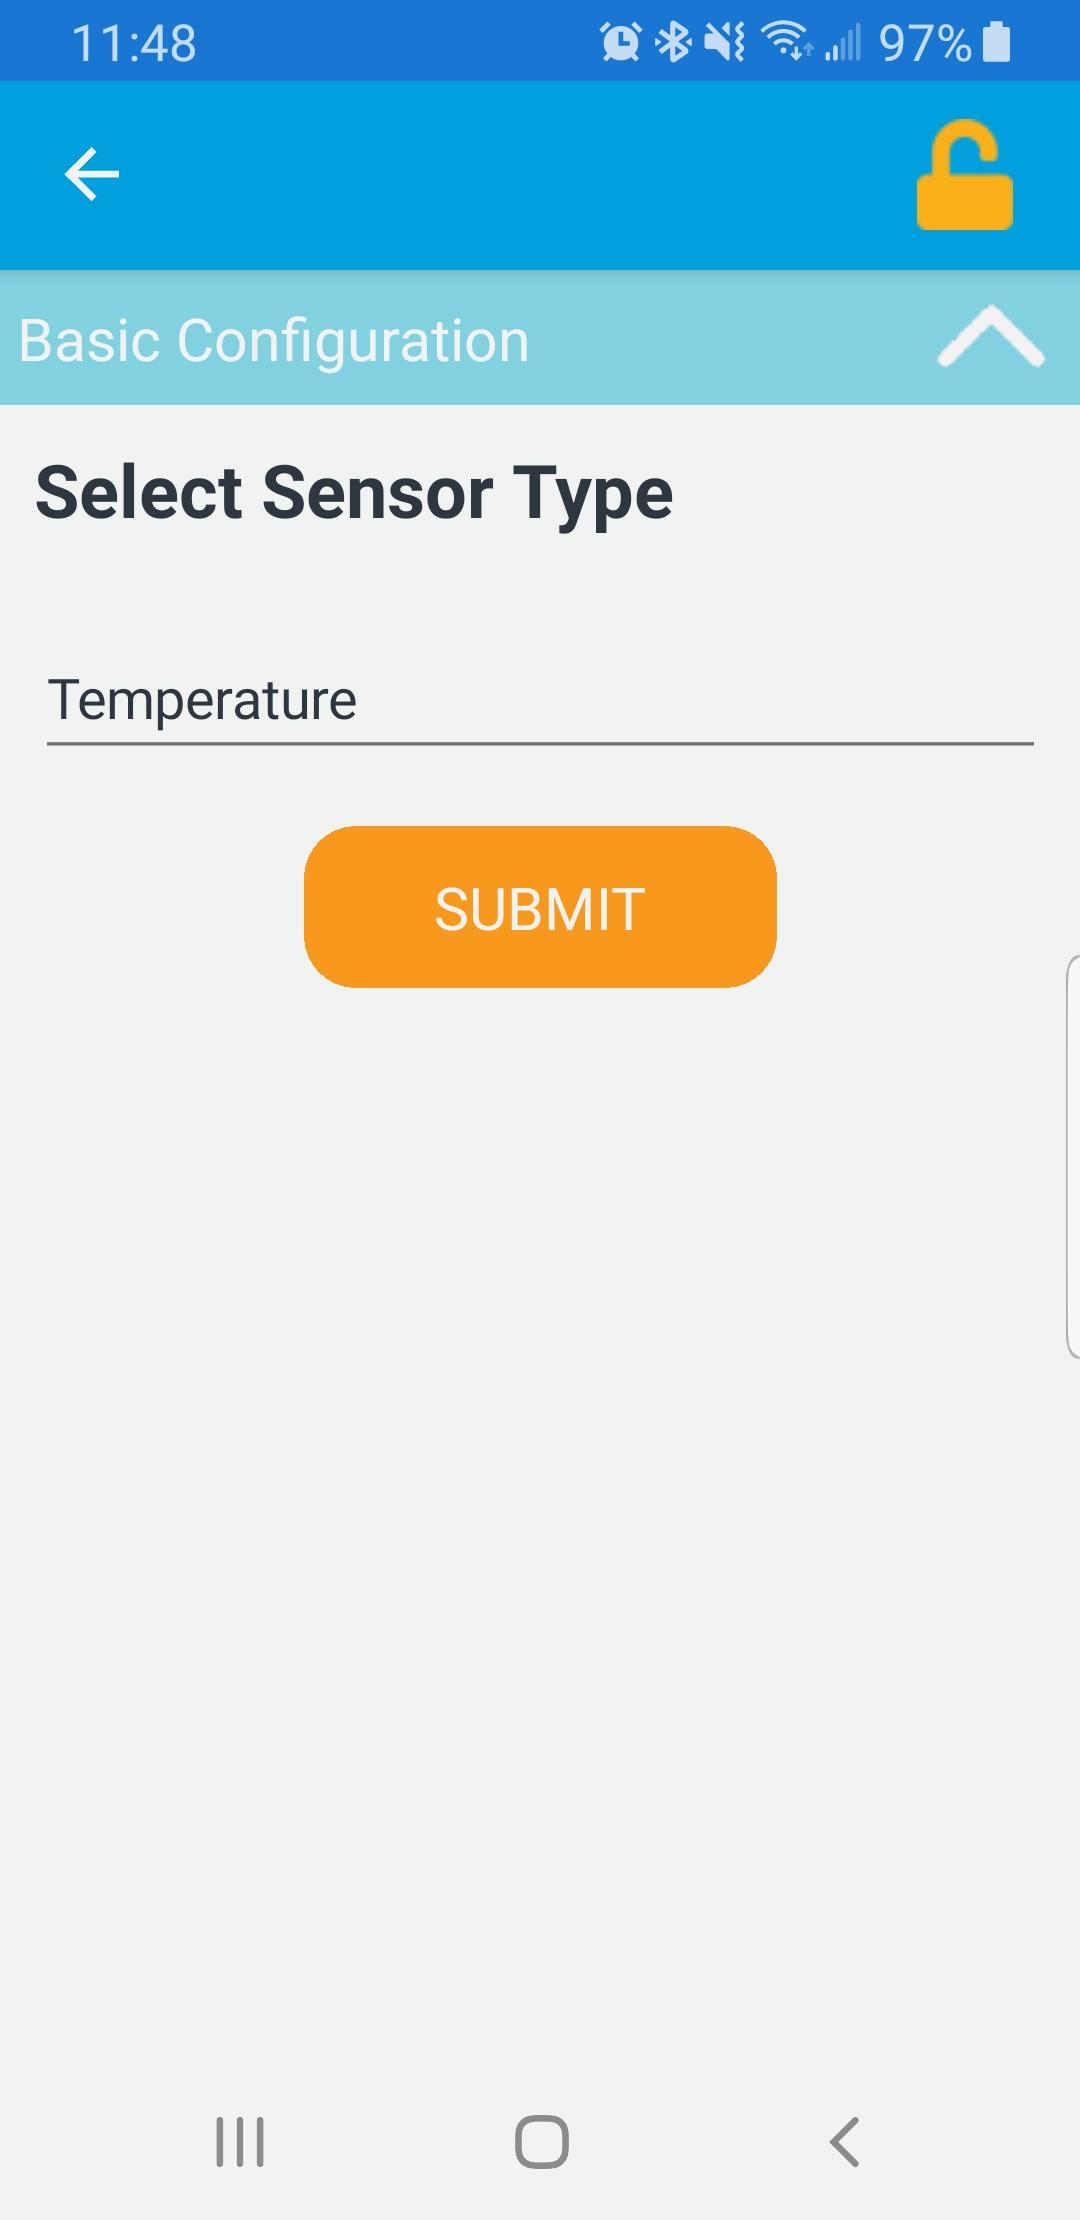 Temperature Type